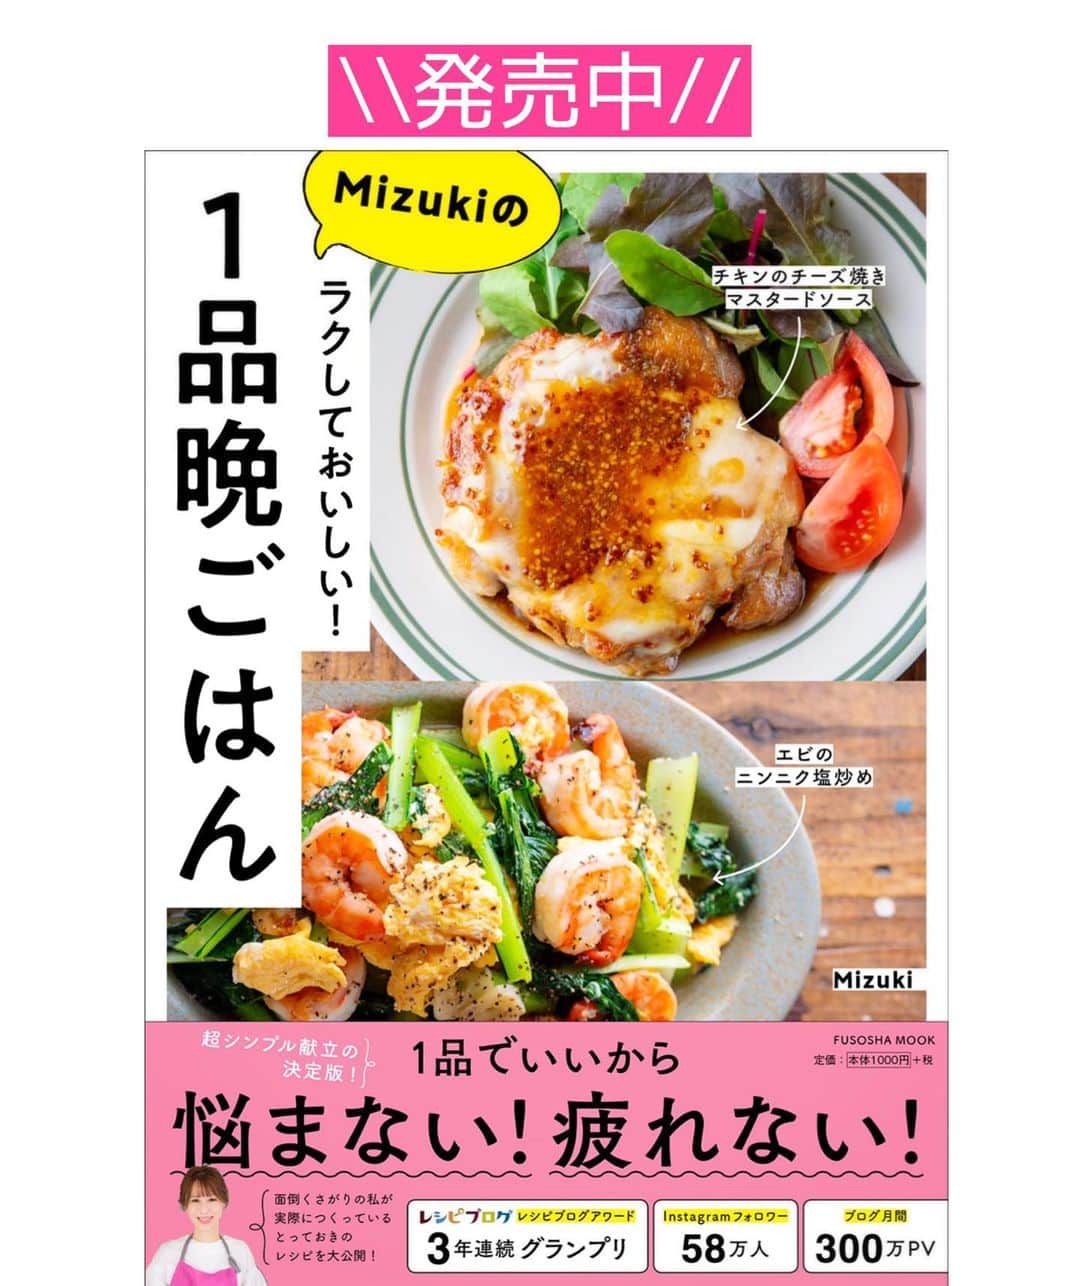 Mizuki【料理ブロガー・簡単レシピ】さんのインスタグラム写真 - (Mizuki【料理ブロガー・簡単レシピ】Instagram)「・﻿ 【#レシピ 】ーーーーーーーー﻿ ♡豚肉と白菜のあんかけ丼♡﻿ ーーーーーーーーーーーーーー﻿ ﻿ ﻿ ﻿ おはようございます(*^^*)﻿ ﻿ 今日ご紹介させていただくのは﻿ ささっとできるのっけごはん♩﻿ \\ 豚肉と白菜のあんかけ丼 // ﻿ しっかり味&とろみあんで﻿ がっつりごはんがすすみますよ〜♡﻿ ﻿ 作り方は超簡単(*´艸`)﻿ 2素材でコスパ抜群！！﻿ 味付けもとろみ付けも﻿ 合わせ調味料で失敗なし♡﻿ フライパンひとつで完成の﻿ 簡単・時短・節約メニューです♩﻿ ﻿ ﻿ ﻿ ＿＿＿＿＿＿＿＿＿＿＿＿＿＿＿＿＿＿＿＿﻿ 【2人分】﻿ 豚バラ薄切り肉...150g﻿ 白菜...1/6個(250g)﻿ ごま油...小2﻿ ●水...200ml﻿ ●酒・醤油・オイスターソース・片栗粉...各大1﻿ ●鶏がらスープ...小1﻿ ごはん...2人分﻿ ﻿ 1.豚肉は3cm長さに切る。白菜は2cm角に切る。●は合わせておく。﻿ 2.フライパンにごま油を中火で熱して豚肉を炒める。色が変わったら白菜も加えて更に炒める。﻿ 3.しんなりしたら●を加え、混ぜながらとろみを付け、ごはんにかける。﻿ ￣￣￣￣￣￣￣￣￣￣￣￣￣￣￣￣￣￣￣￣﻿ ﻿ ﻿ ﻿ ﻿ 《ポイント》﻿ ♦︎しっかり味です♩﻿ ♦︎きのこや人参など加えても◎﻿ ♦︎合わせ調味料は加える前によく混ぜて下さい♩﻿ ﻿ ﻿ ﻿ ﻿ ﻿ ﻿ ﻿ ﻿ 📕新刊発売中📕﻿ 【ラクしておいしい！#1品晩ごはん 】﻿ ￣￣￣￣￣￣￣￣￣￣￣￣￣￣￣￣￣﻿ 私たちだってヘトヘトな日がある•••﻿ 毎日何品も作っていられない•••﻿ もうごはんに悩みたくない😢﻿ そんな時、1品ごはんはいかがでしょう？﻿ というご提案です✨﻿ ﻿ 【1品ごはん】は﻿ 副菜いらずで全てがシンプル！﻿ ￣￣￣￣￣￣￣￣￣￣￣￣￣￣￣￣￣￣﻿ 一品つくるだけでいいから﻿ 献立を考えなくてよし！﻿ ￣￣￣￣￣￣￣￣￣￣￣￣￣￣￣￣￣￣﻿ 悩まない、疲れない、﻿ 気力や時間がなくてもなんとかなる！﻿ ￣￣￣￣￣￣￣￣￣￣￣￣￣￣￣￣￣￣﻿ そんな頼りになる﻿ 便利なお助けごはんです☺️💕﻿ (ハイライトに🔗貼っています✨)﻿ ￣￣￣￣￣￣￣￣￣￣￣￣￣￣￣￣￣﻿ ﻿ ﻿ ﻿ ﻿ ﻿ ⭐️発売中⭐️﻿ ＿＿＿＿＿＿＿＿＿＿＿＿＿＿＿＿＿＿﻿ しんどくない献立、考えました♩﻿ \15分でいただきます/﻿ 📕#Mizukiの2品献立 📕﻿ ﻿ 和食をもっとカジュアルに♩﻿ \毎日のごはんがラクになる/﻿ 📘#Mizukiの今どき和食 📘﻿ ﻿ ホケミレシピの決定版♩﻿ \はじめてでも失敗しない/﻿ 📙ホットケーキミックスのお菓子 📙﻿ ﻿ NHKまる得マガジンテキスト☆﻿ ホットケーキミックスで﻿ 📗絶品おやつ&意外なランチ📗﻿ ￣￣￣￣￣￣￣￣￣￣￣￣￣￣￣￣￣￣﻿ ﻿ ﻿ ﻿ ＿＿＿＿＿＿＿＿＿＿＿＿＿＿＿＿＿＿﻿ レシピを作って下さった際や﻿ レシピ本についてのご投稿には﻿ タグ付け( @mizuki_31cafe )して﻿ お知らせいただけると嬉しいです😊💕﻿ ￣￣￣￣￣￣￣￣￣￣￣￣￣￣￣￣￣￣﻿ ﻿ ﻿ ﻿ ﻿ #豚肉#白菜#あんかけ#丼#中華丼#Mizuki#簡単レシピ#時短レシピ#節約レシピ#料理#フーディーテーブル#マカロニメイト#おうちごはん#デリスタグラマー#料理好きな人と繋がりたい#おうちごはんlover#写真好きな人と繋がりたい#foodpic#cooking#recipe#lin_stagrammer#foodporn#yummy#f52grams#豚肉と白菜のあんかけ丼m」1月4日 7時18分 - mizuki_31cafe